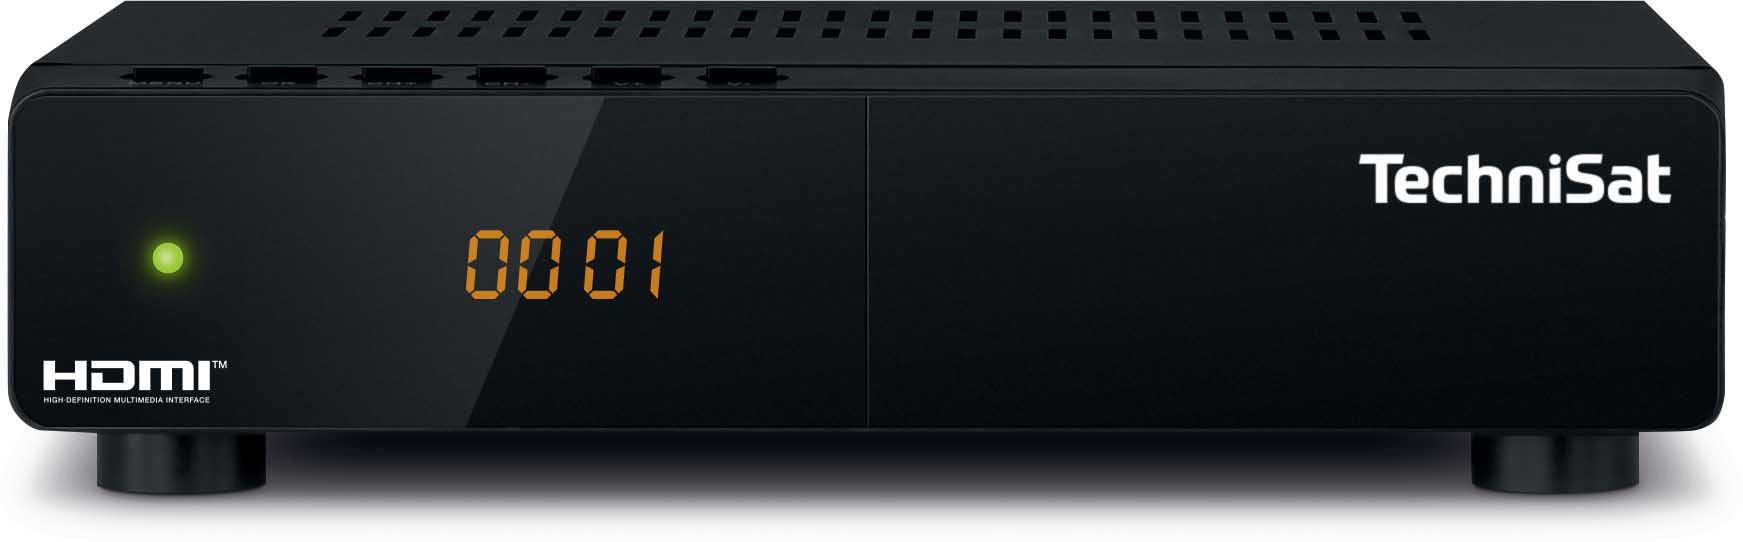 TECHNISAT HD-S DVB-S, 261 Schwarz) (HDTV, DVB-S2, HDTV-Receiver